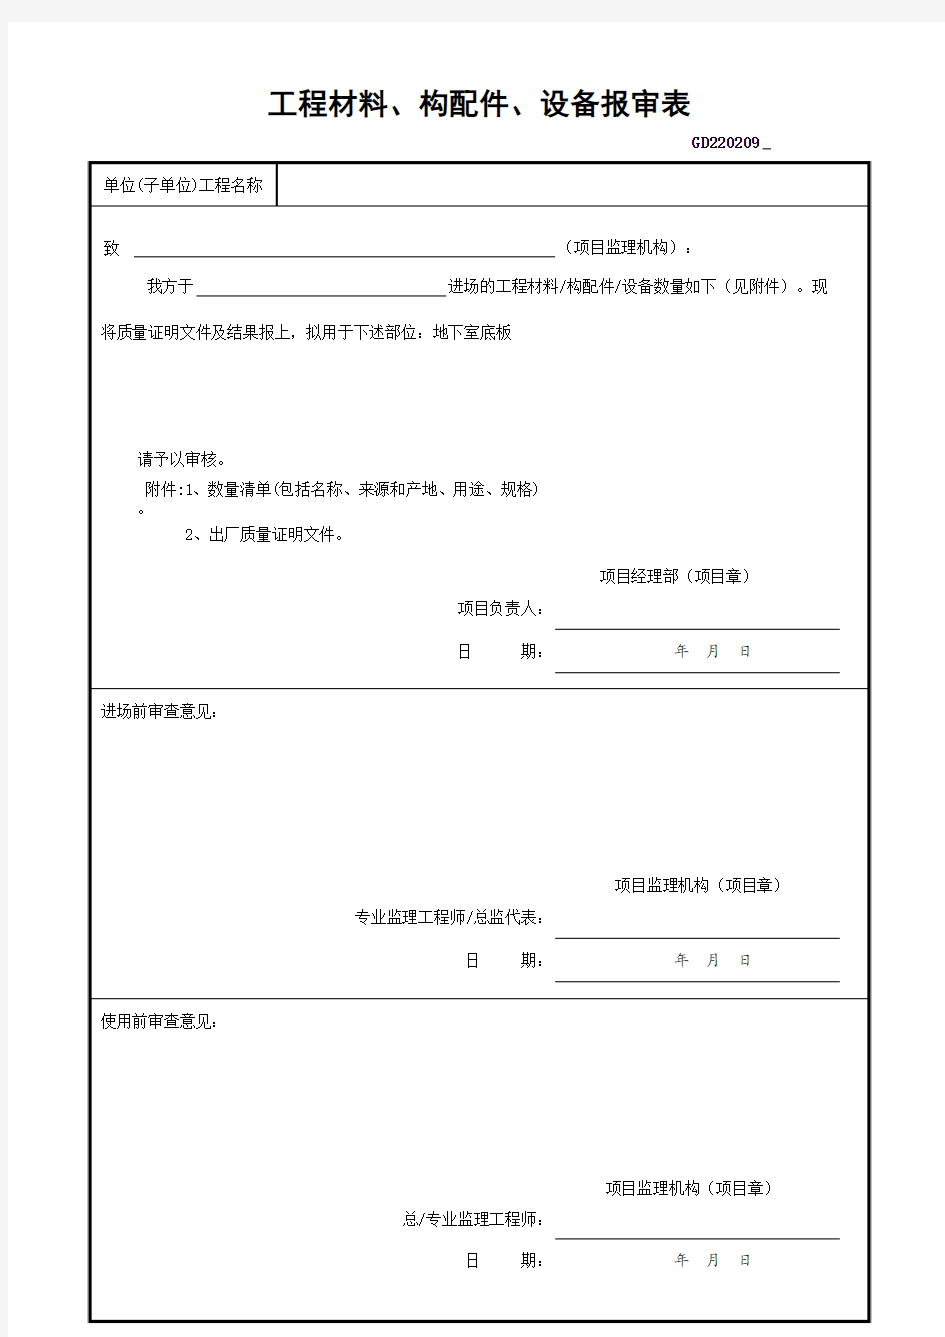 工程材料、构配件、设备报审表-广东省